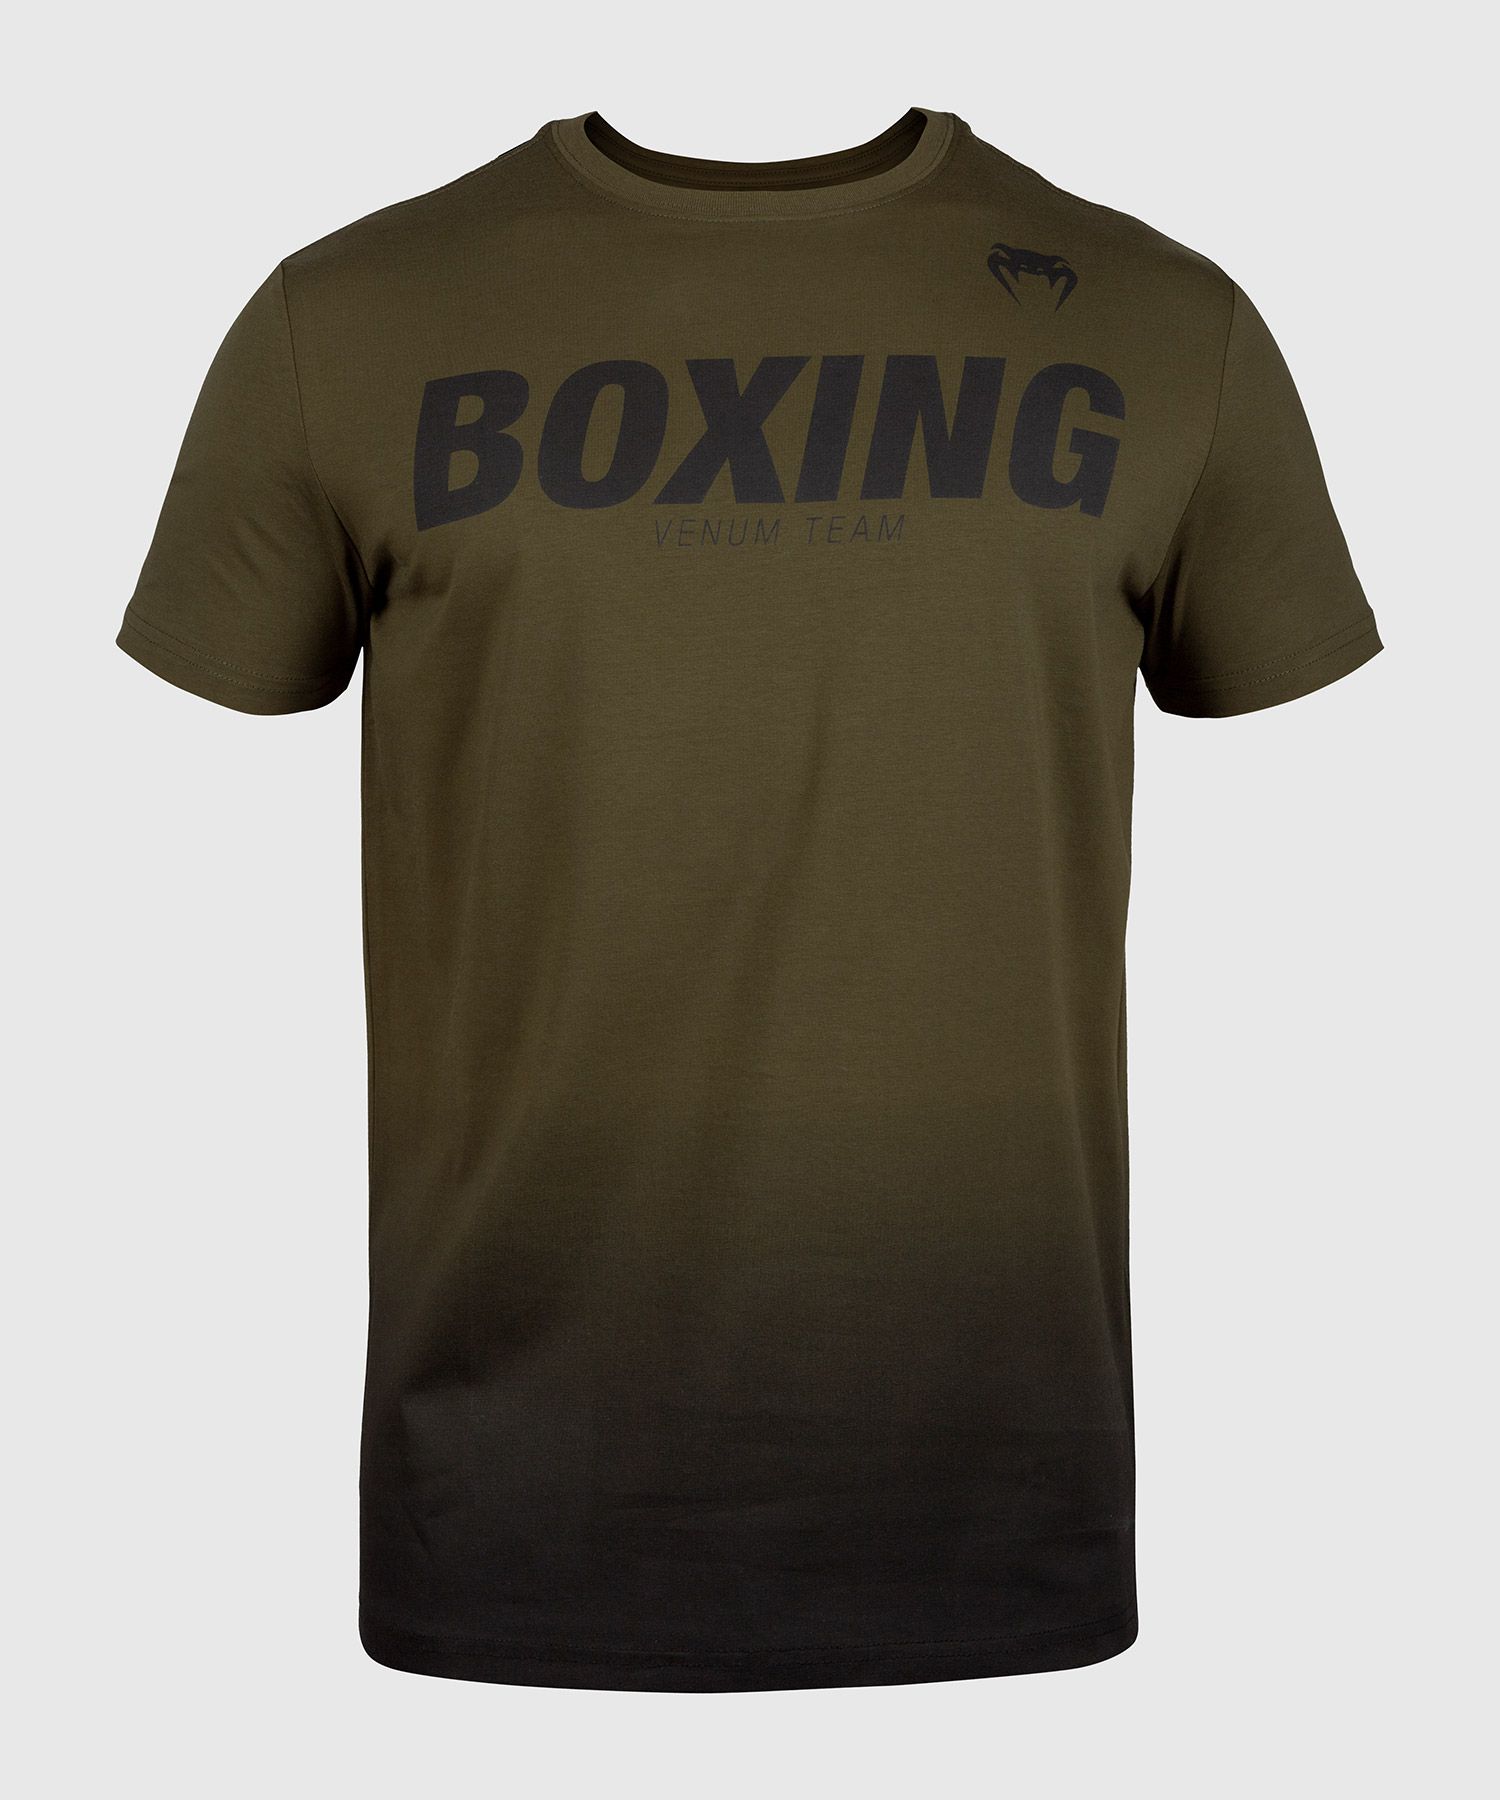 Venum Boxing VT T-shirt - Kaki/Zwart